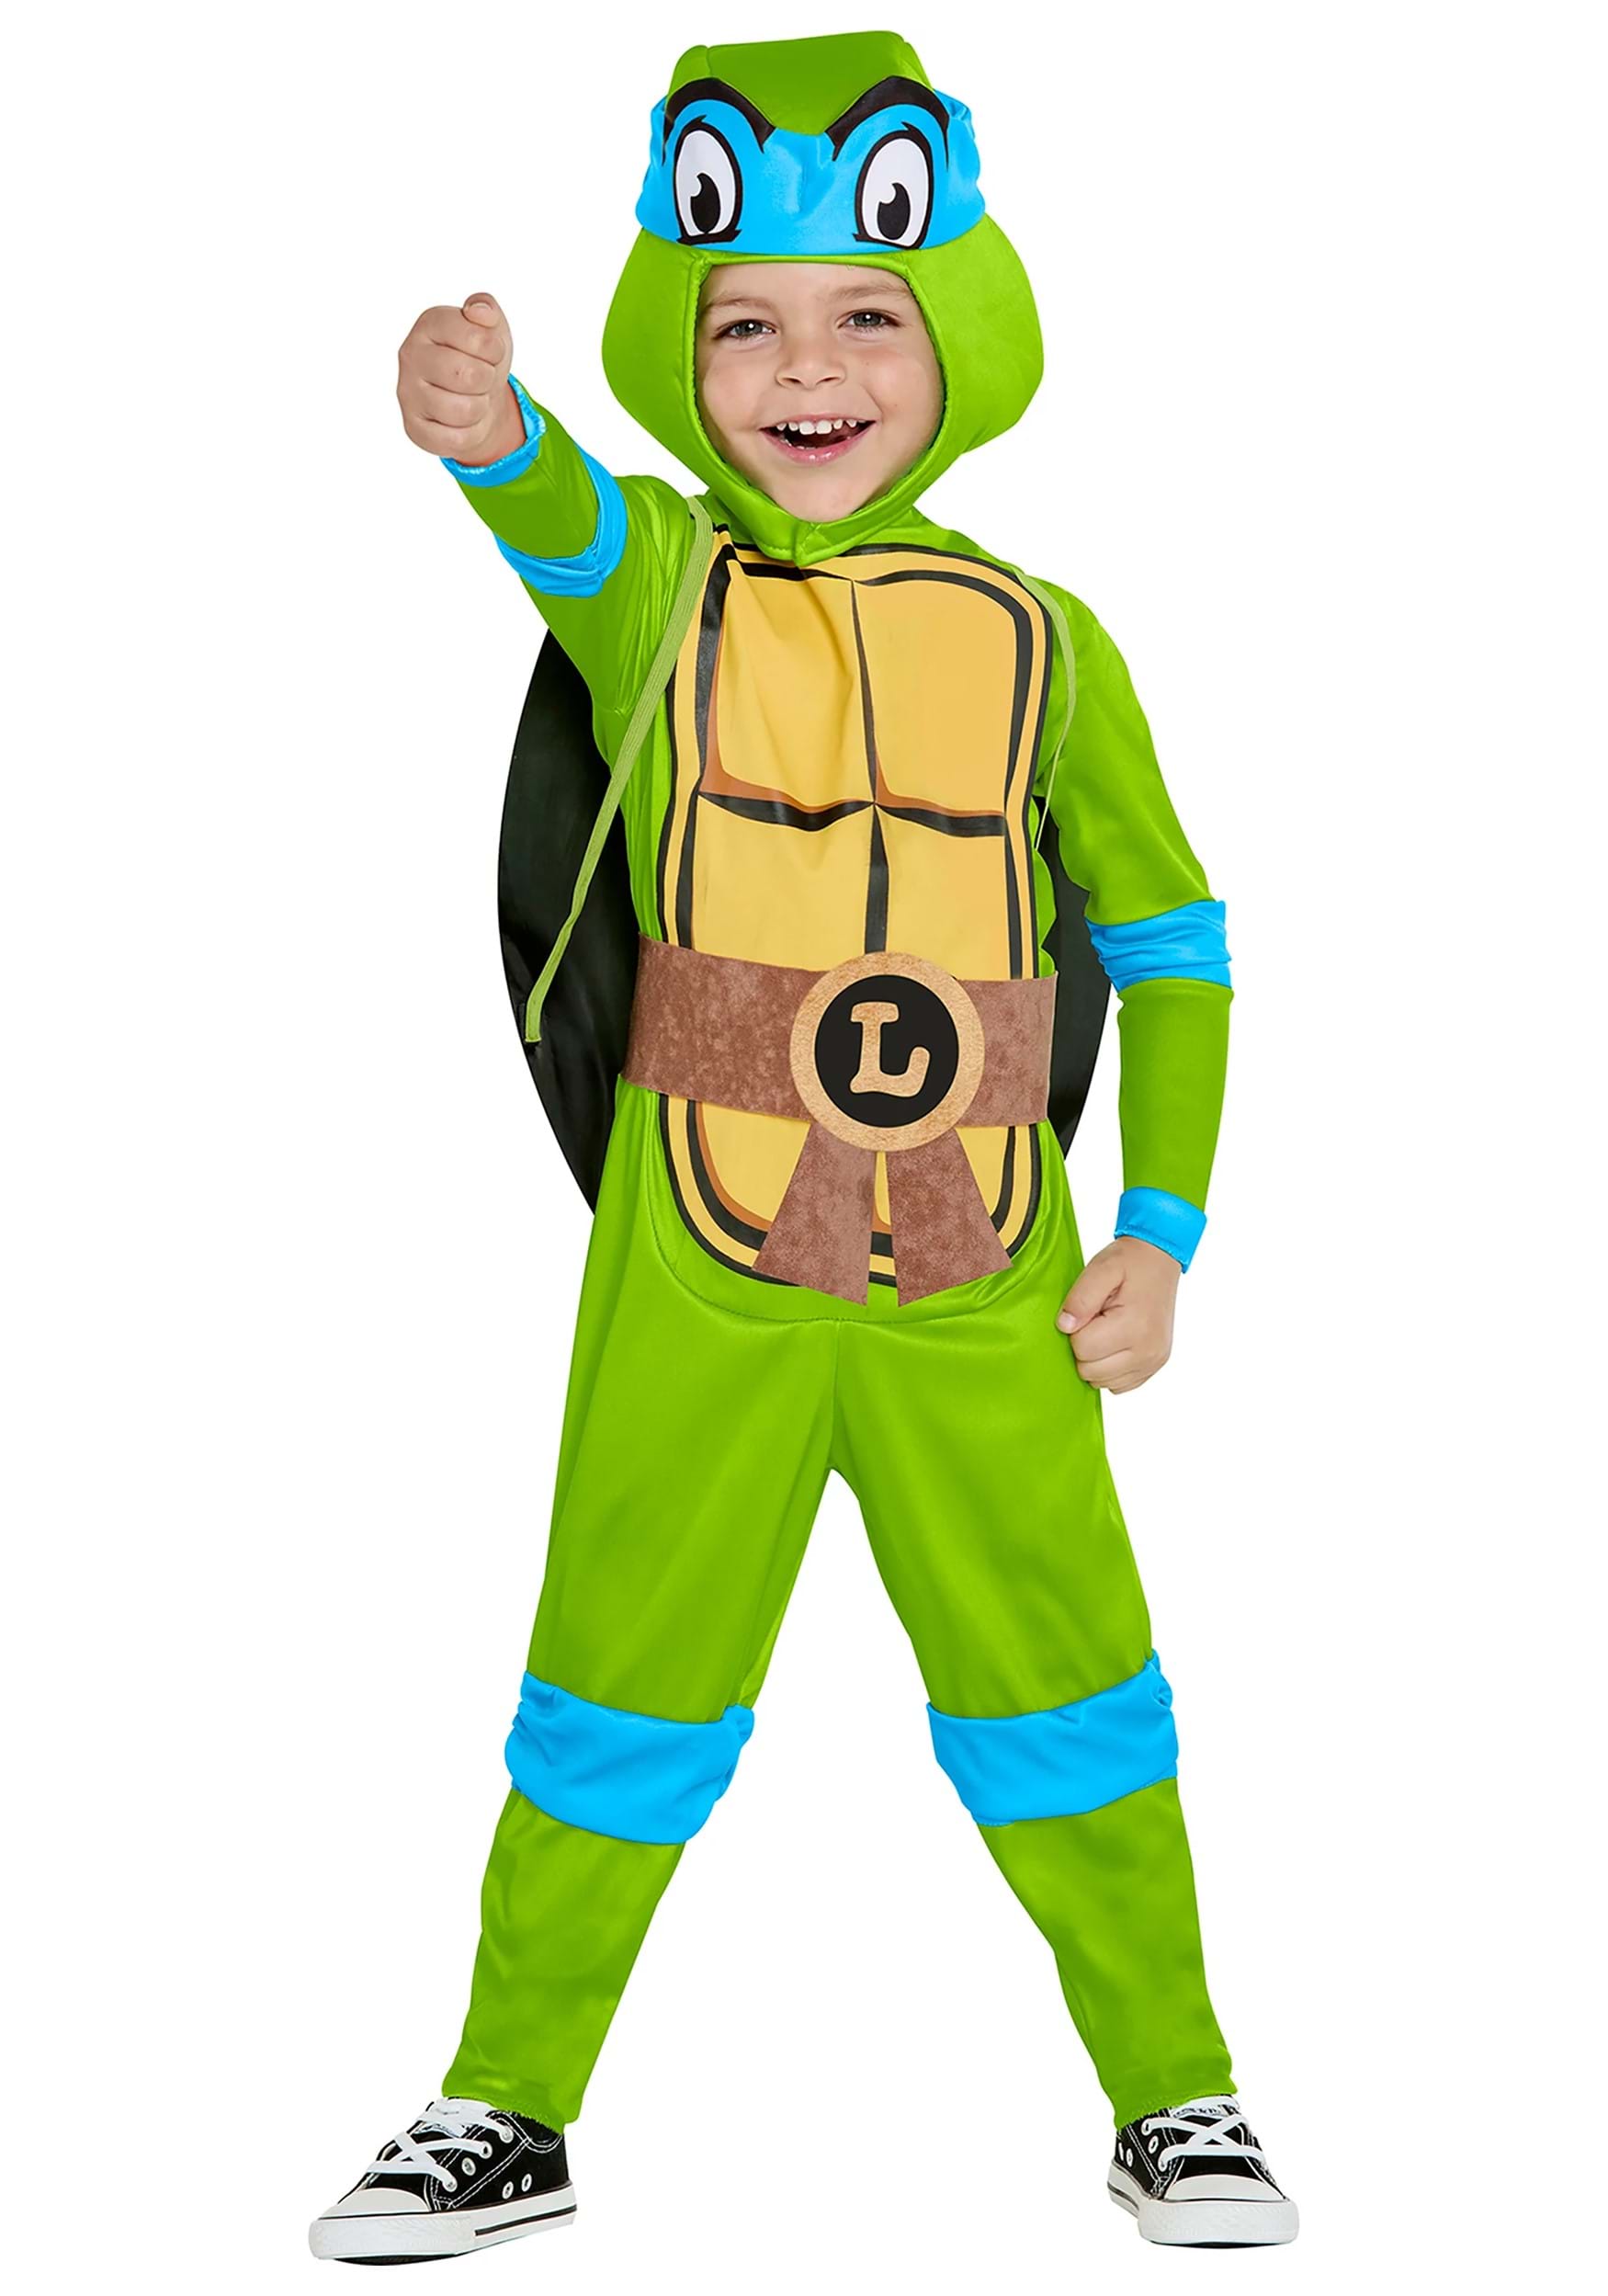 https://images.fun.com/products/85453/1-1/kids-teenage-mutant-ninja-turtles-leonardo-costume.jpg